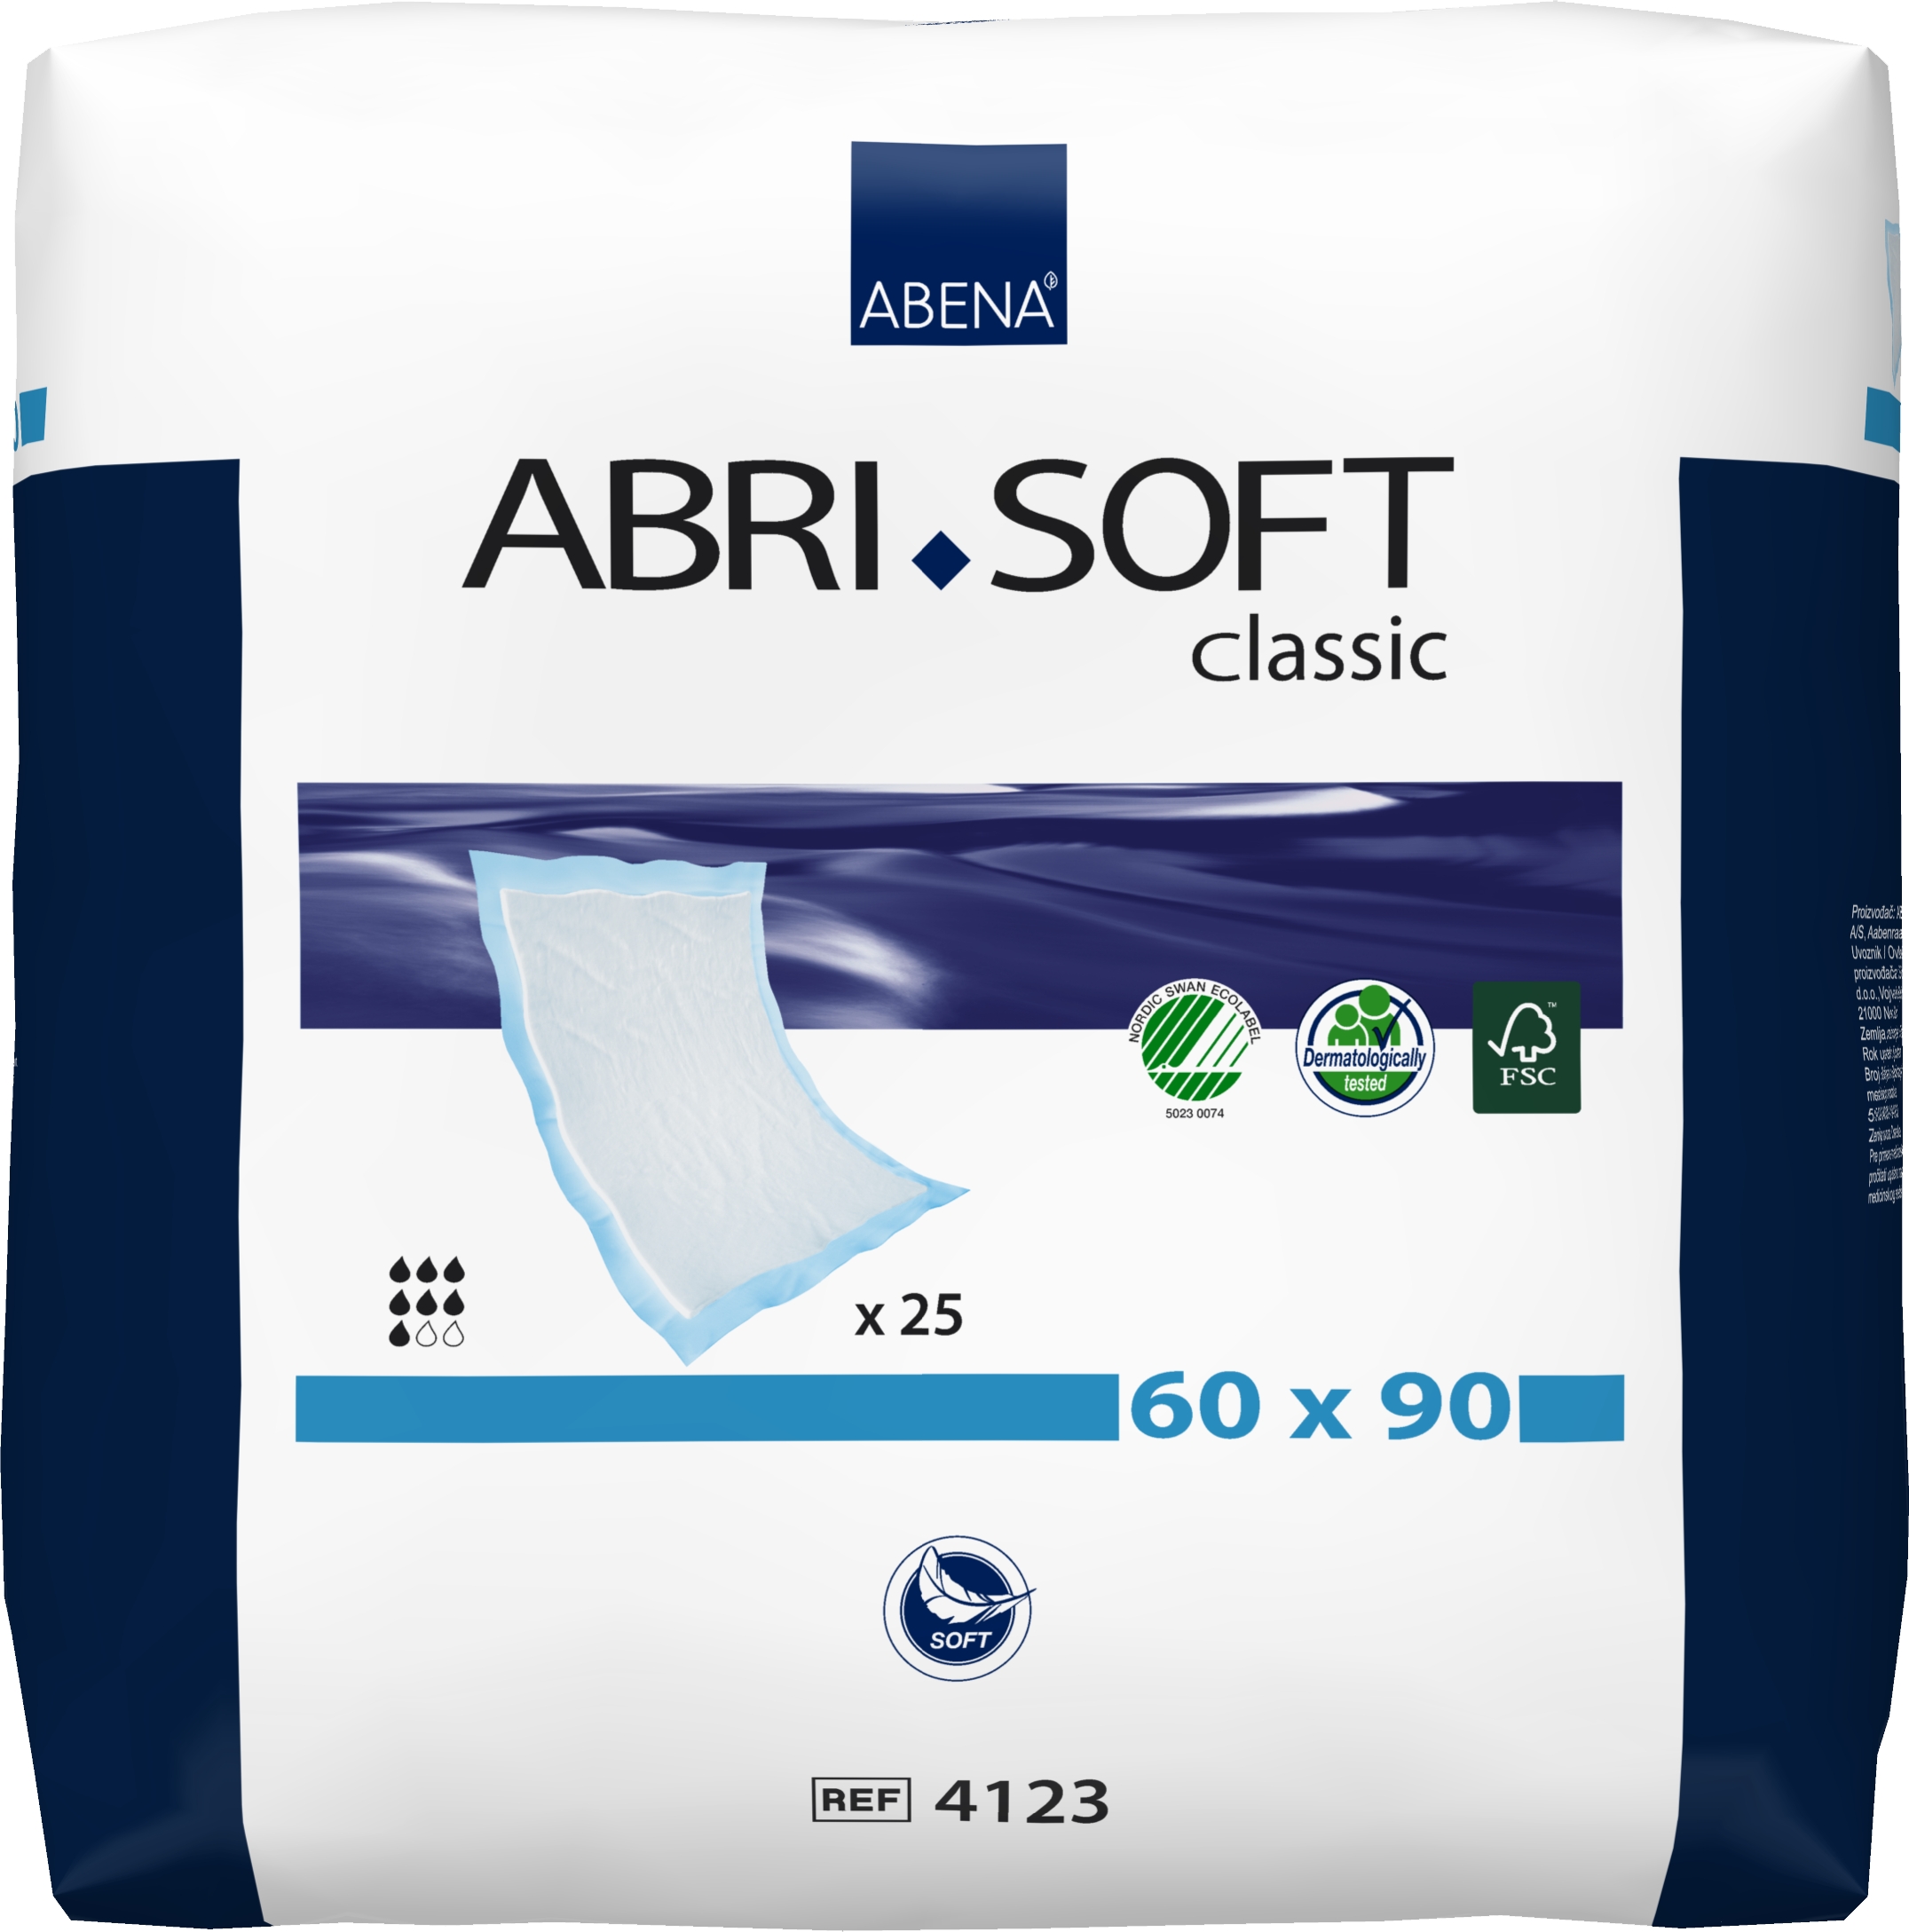 Abri Soft Classic, 60x90 cm